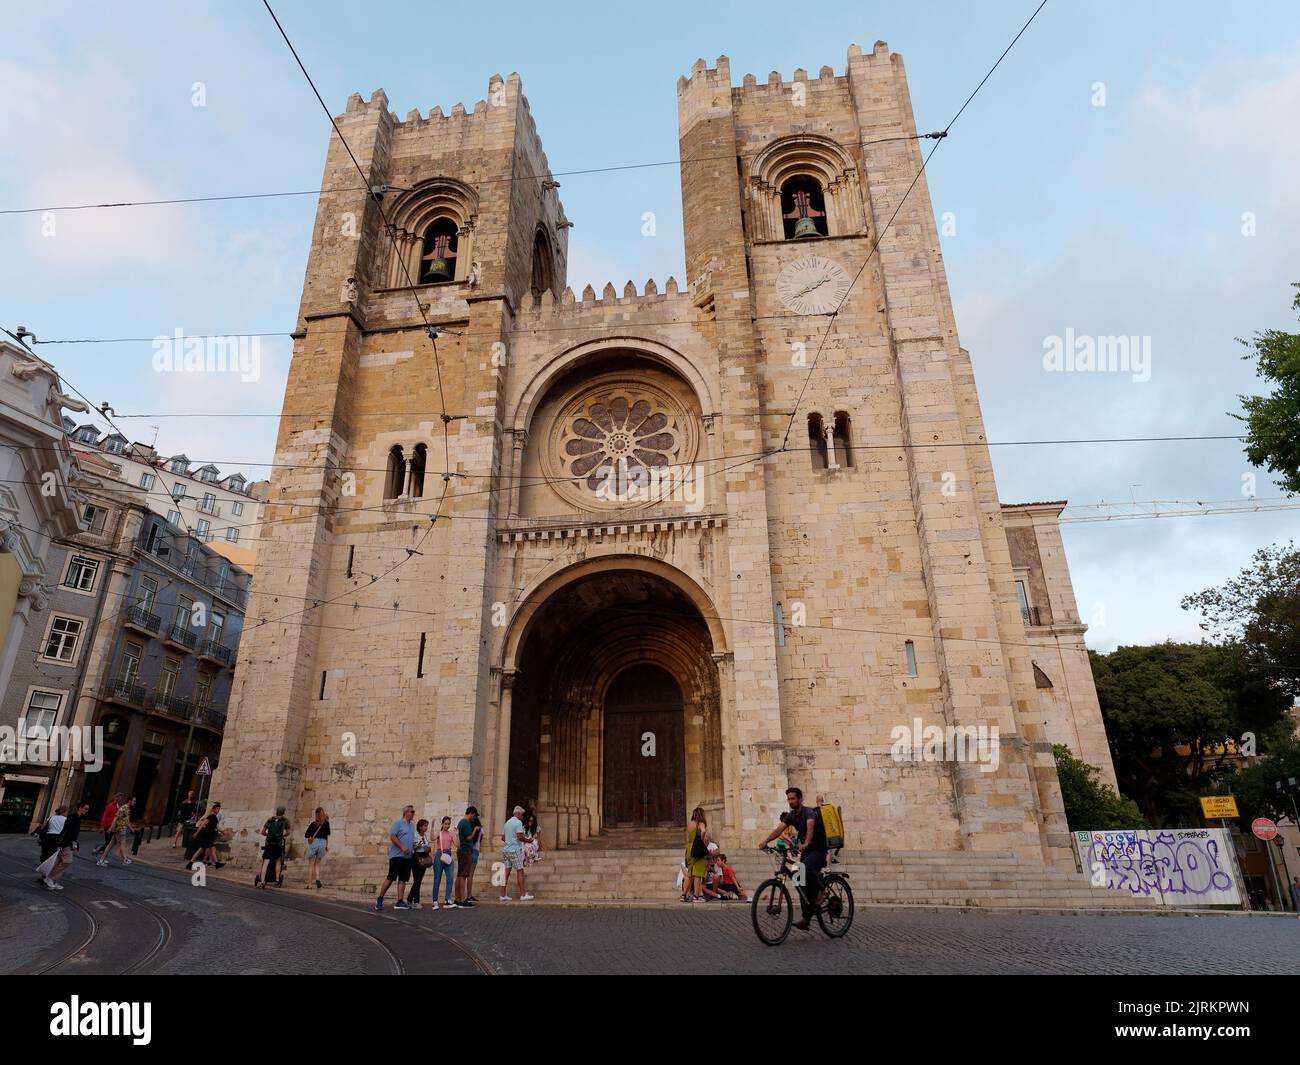 Cathédrale Saint Mary Major alias Cathédrale de Lisbonne alias Sé de Lisboa. Les touristes marchent dans la rue et quelqu'un fait du vélo. Banque D'Images